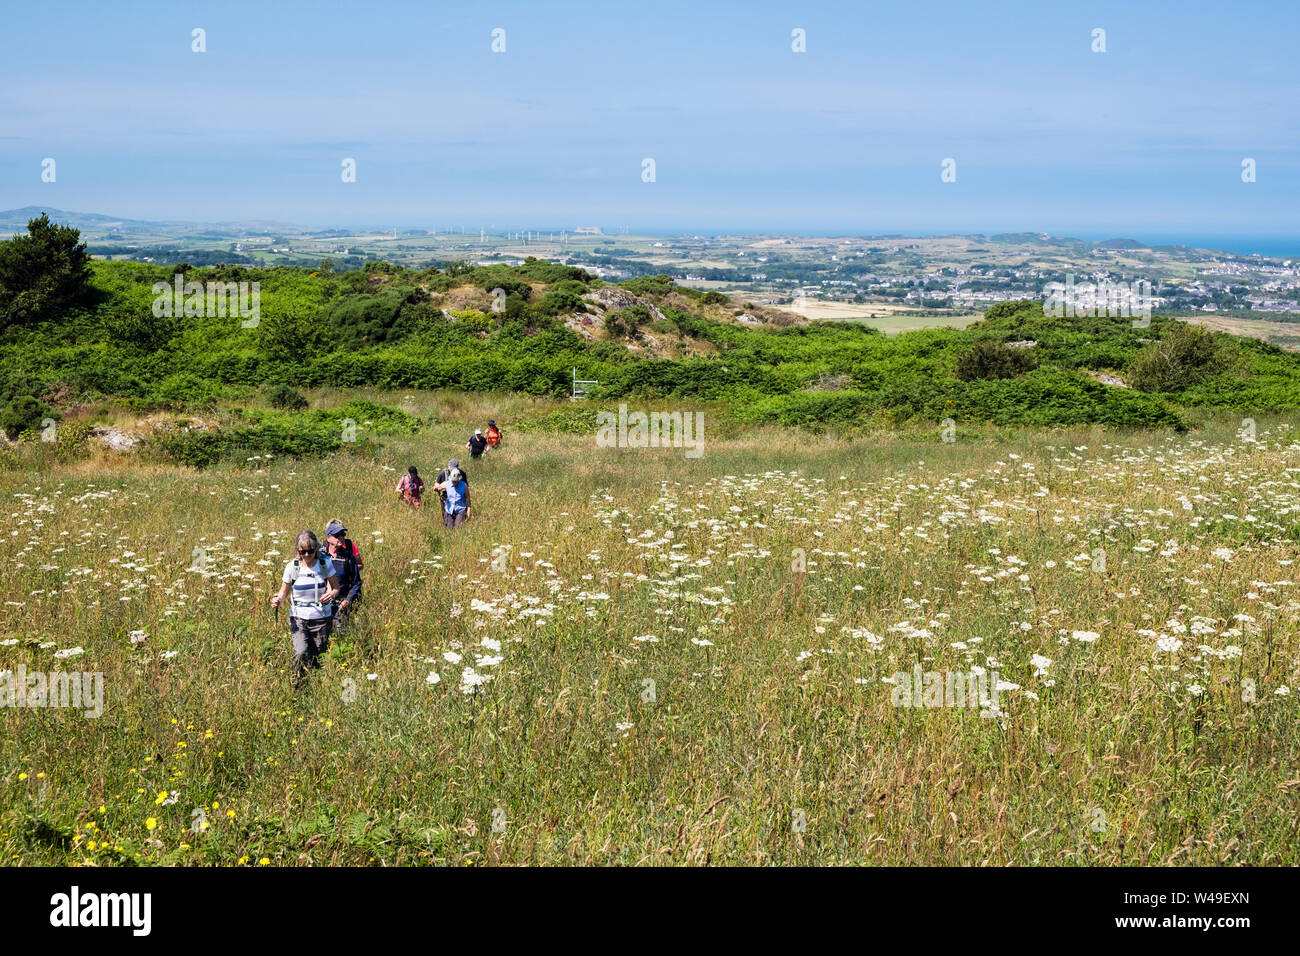 Les promeneurs marchant sur un sentier à travers une prairie de fleurs sauvages dans la campagne en été. Llaneilian, Isle of Anglesey, au nord du Pays de Galles, Royaume-Uni, Angleterre Banque D'Images